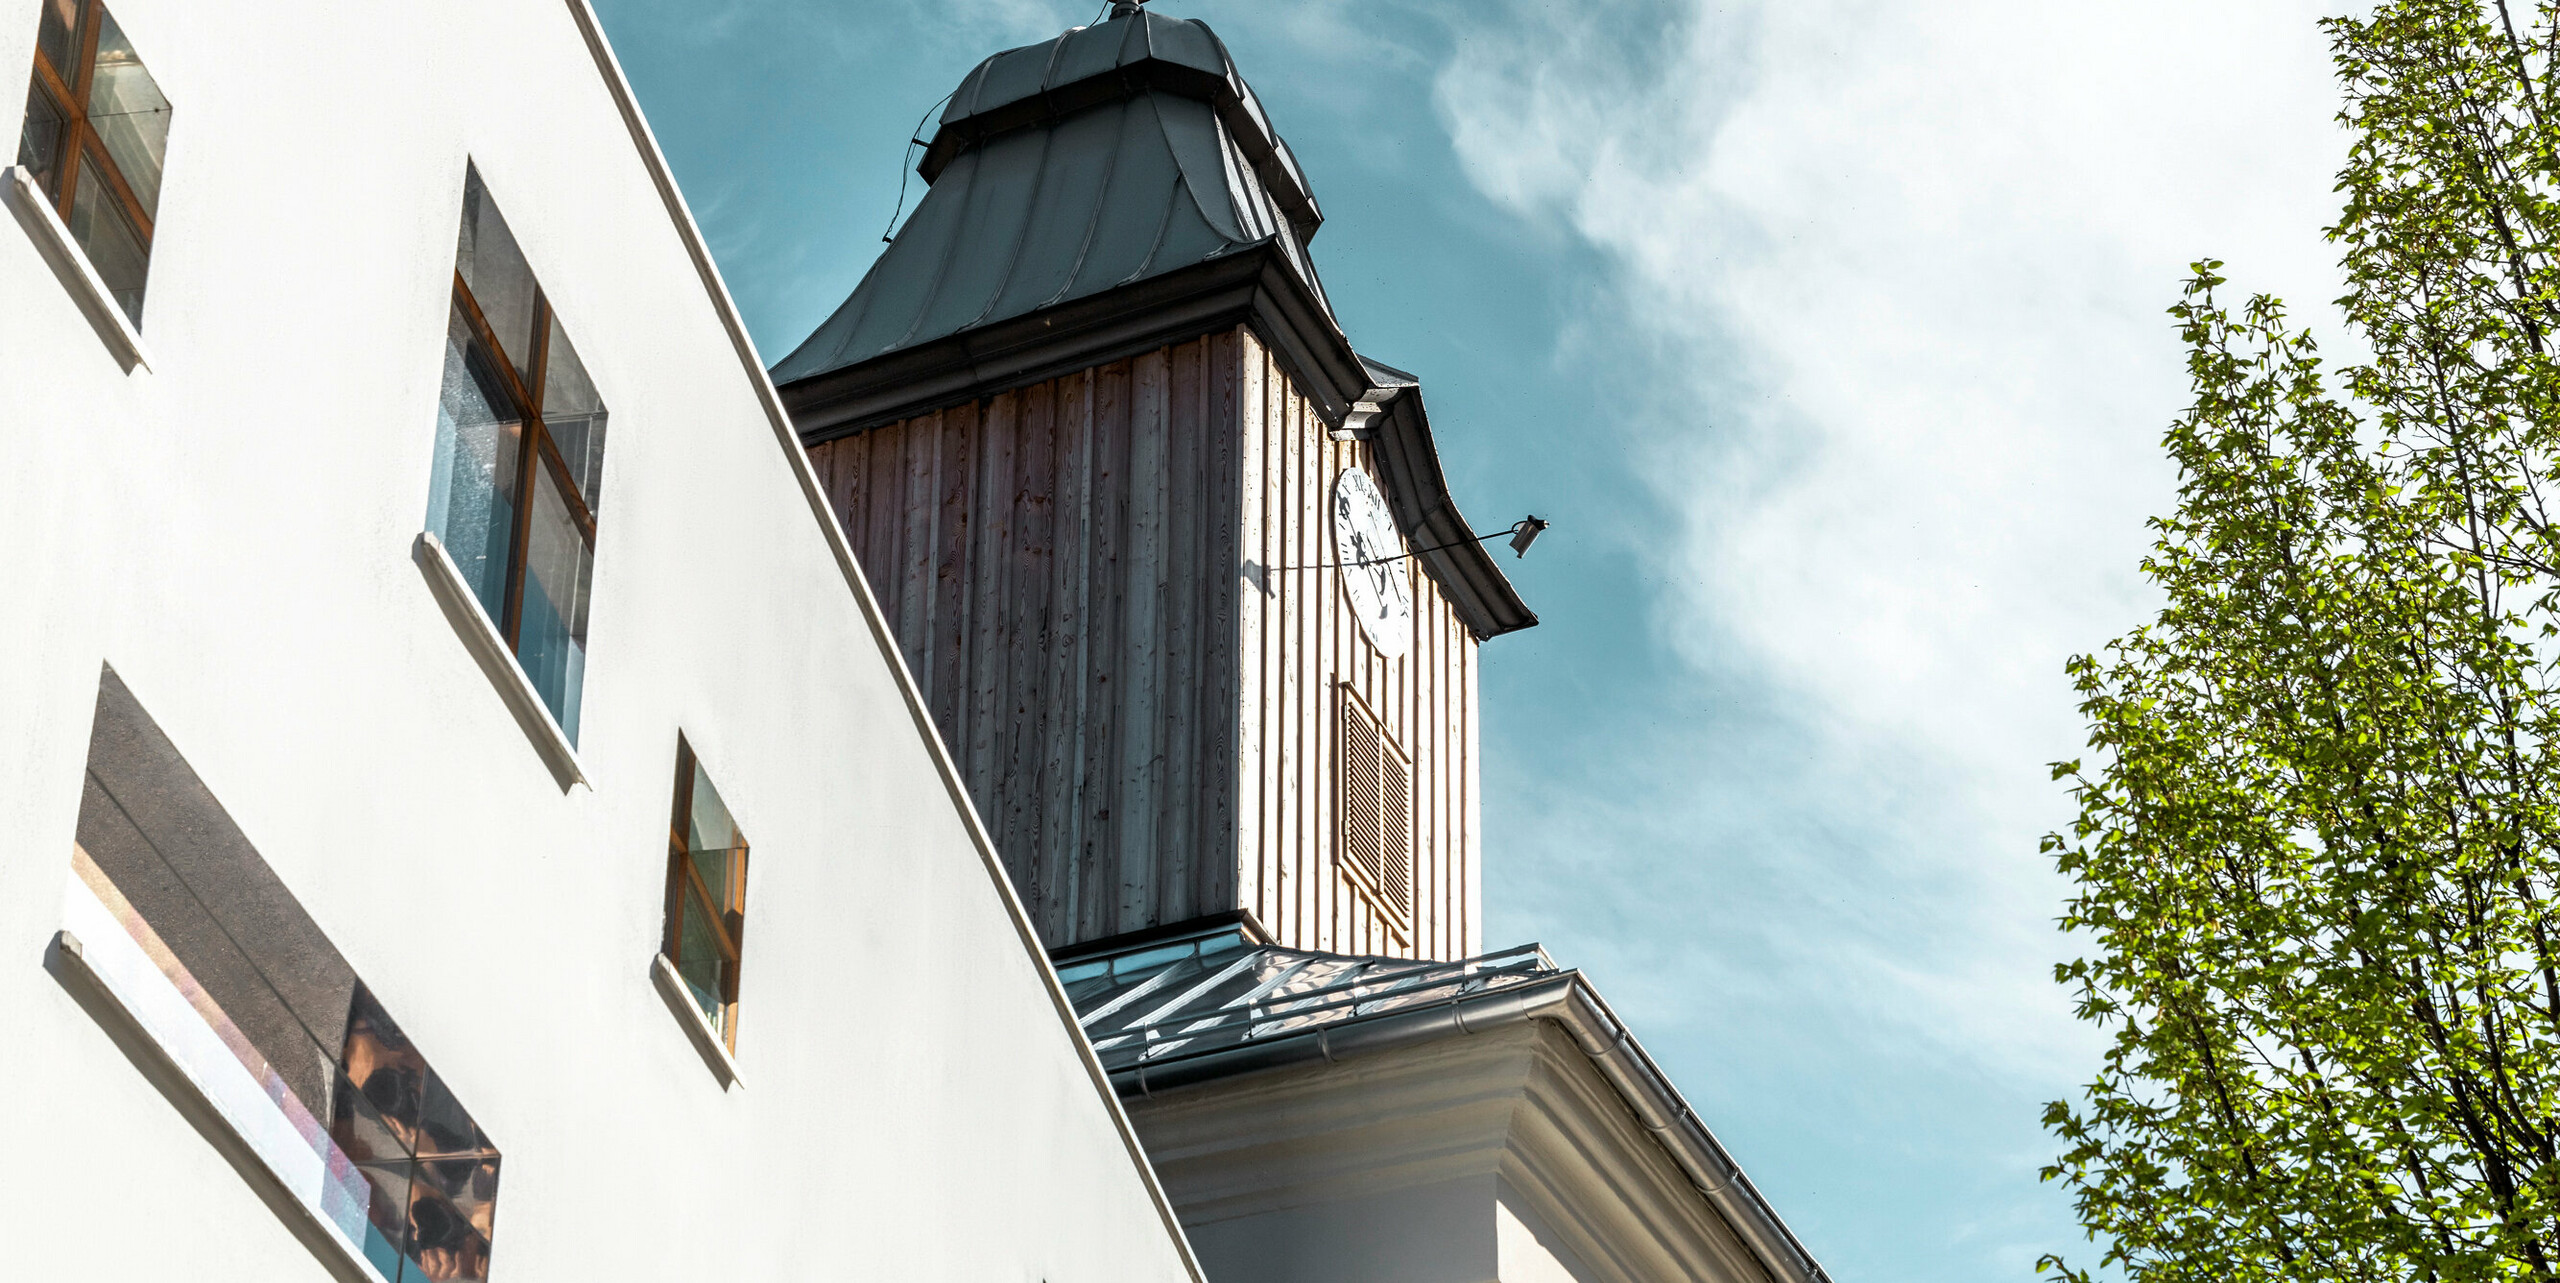 Streha hotela Glockenturm v Marktlu pri Lilienfeldu v Avstriji je prekrita s PREFA strešnimi skodlami v P.10 antracitni barvi. Sistem za odvodnjavanje PREFA je na stavbi ohranjen v naravnem aluminiju. Nedaleč stran od hotela Glockenturm se nahaja Leopold - naša gostilna, ki je prav tako prekrita s PREFA izdelki. 